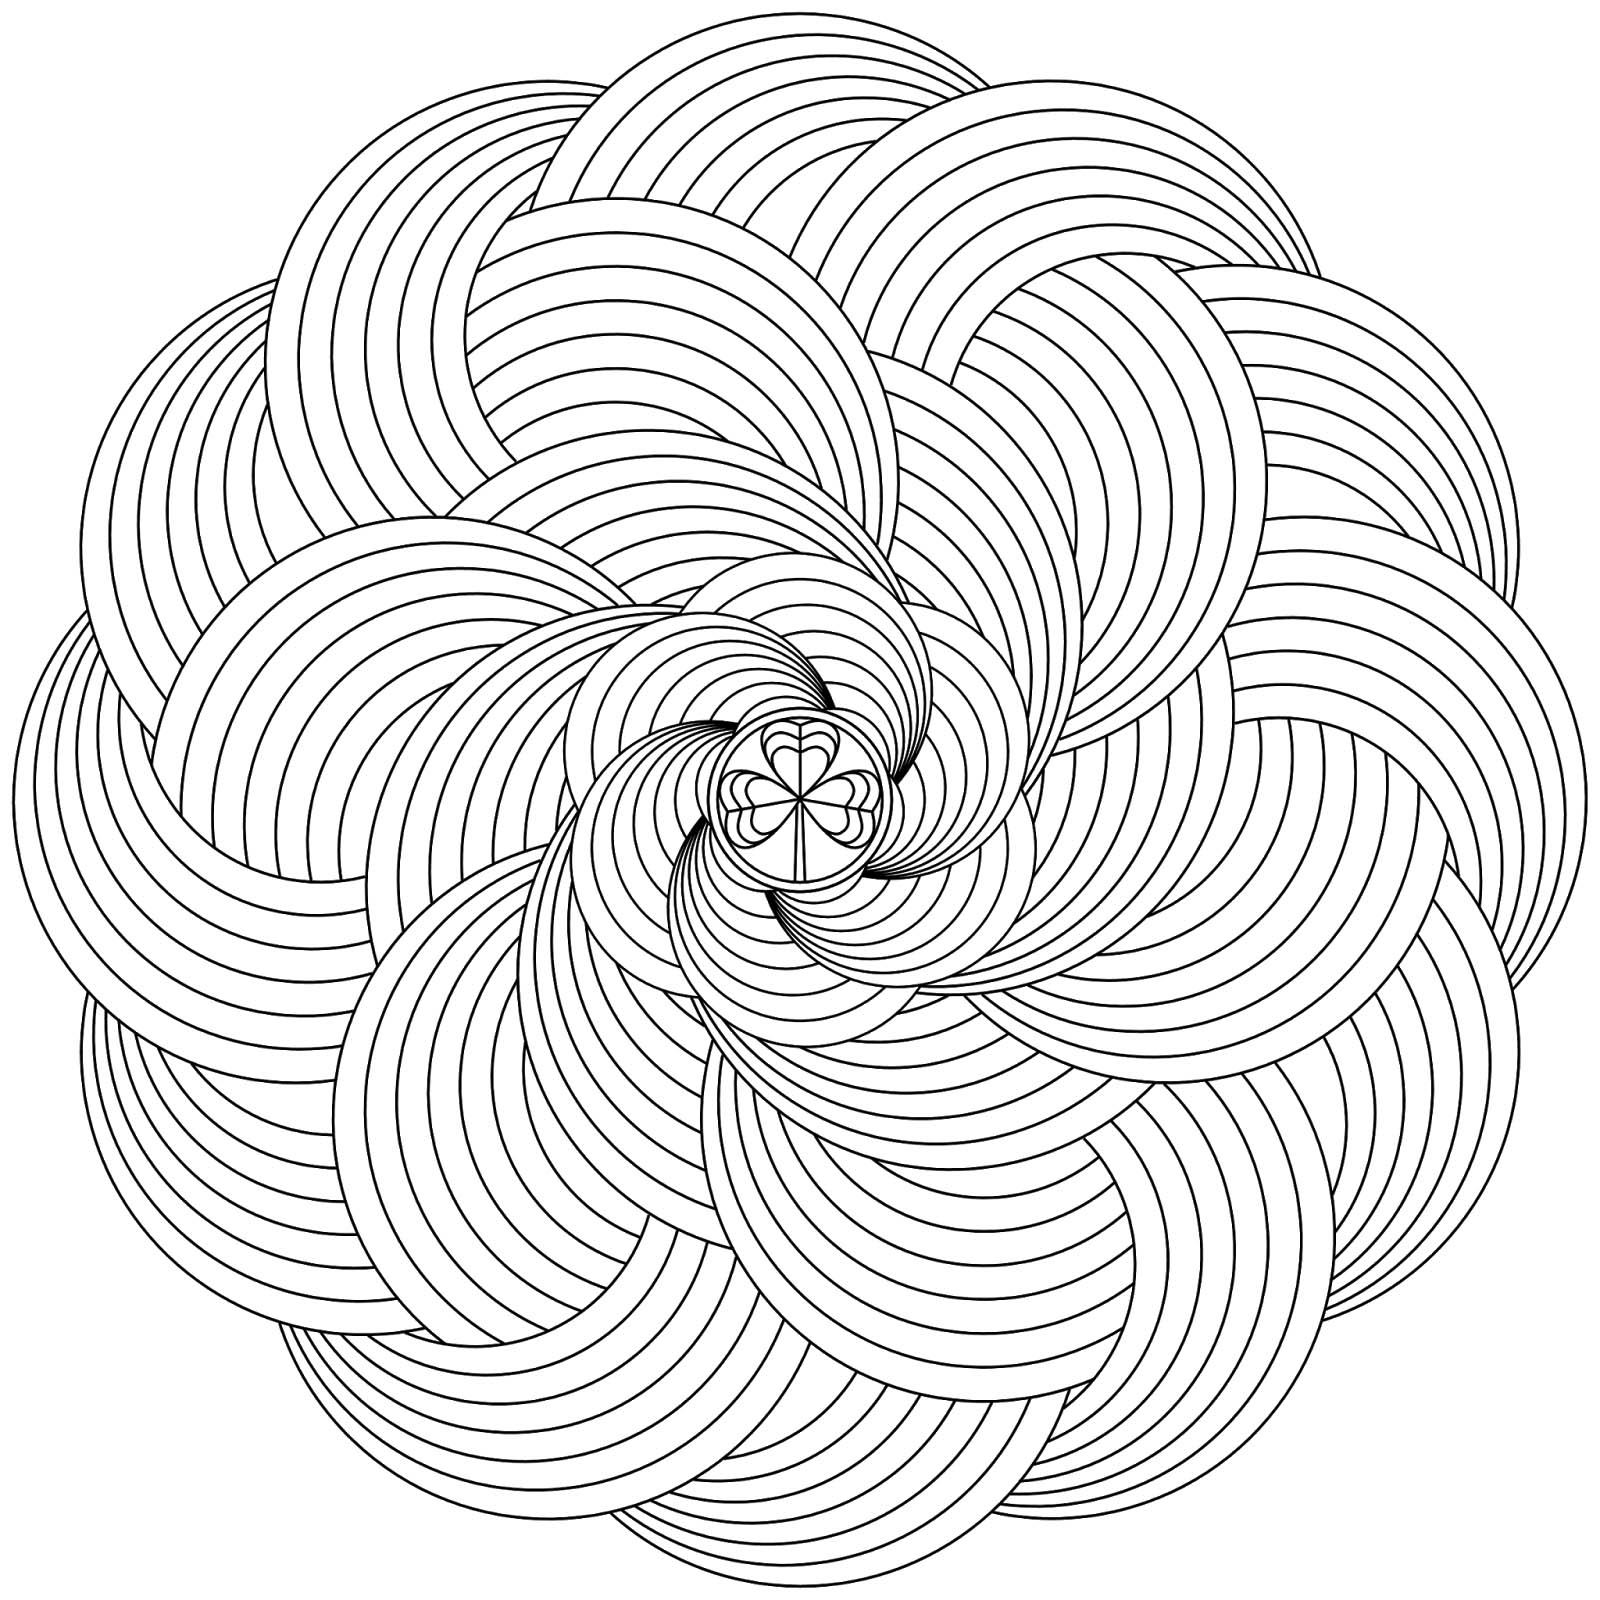 Mandala para descargar en pdf - 7 - Esta imagen contiene : Arco iris